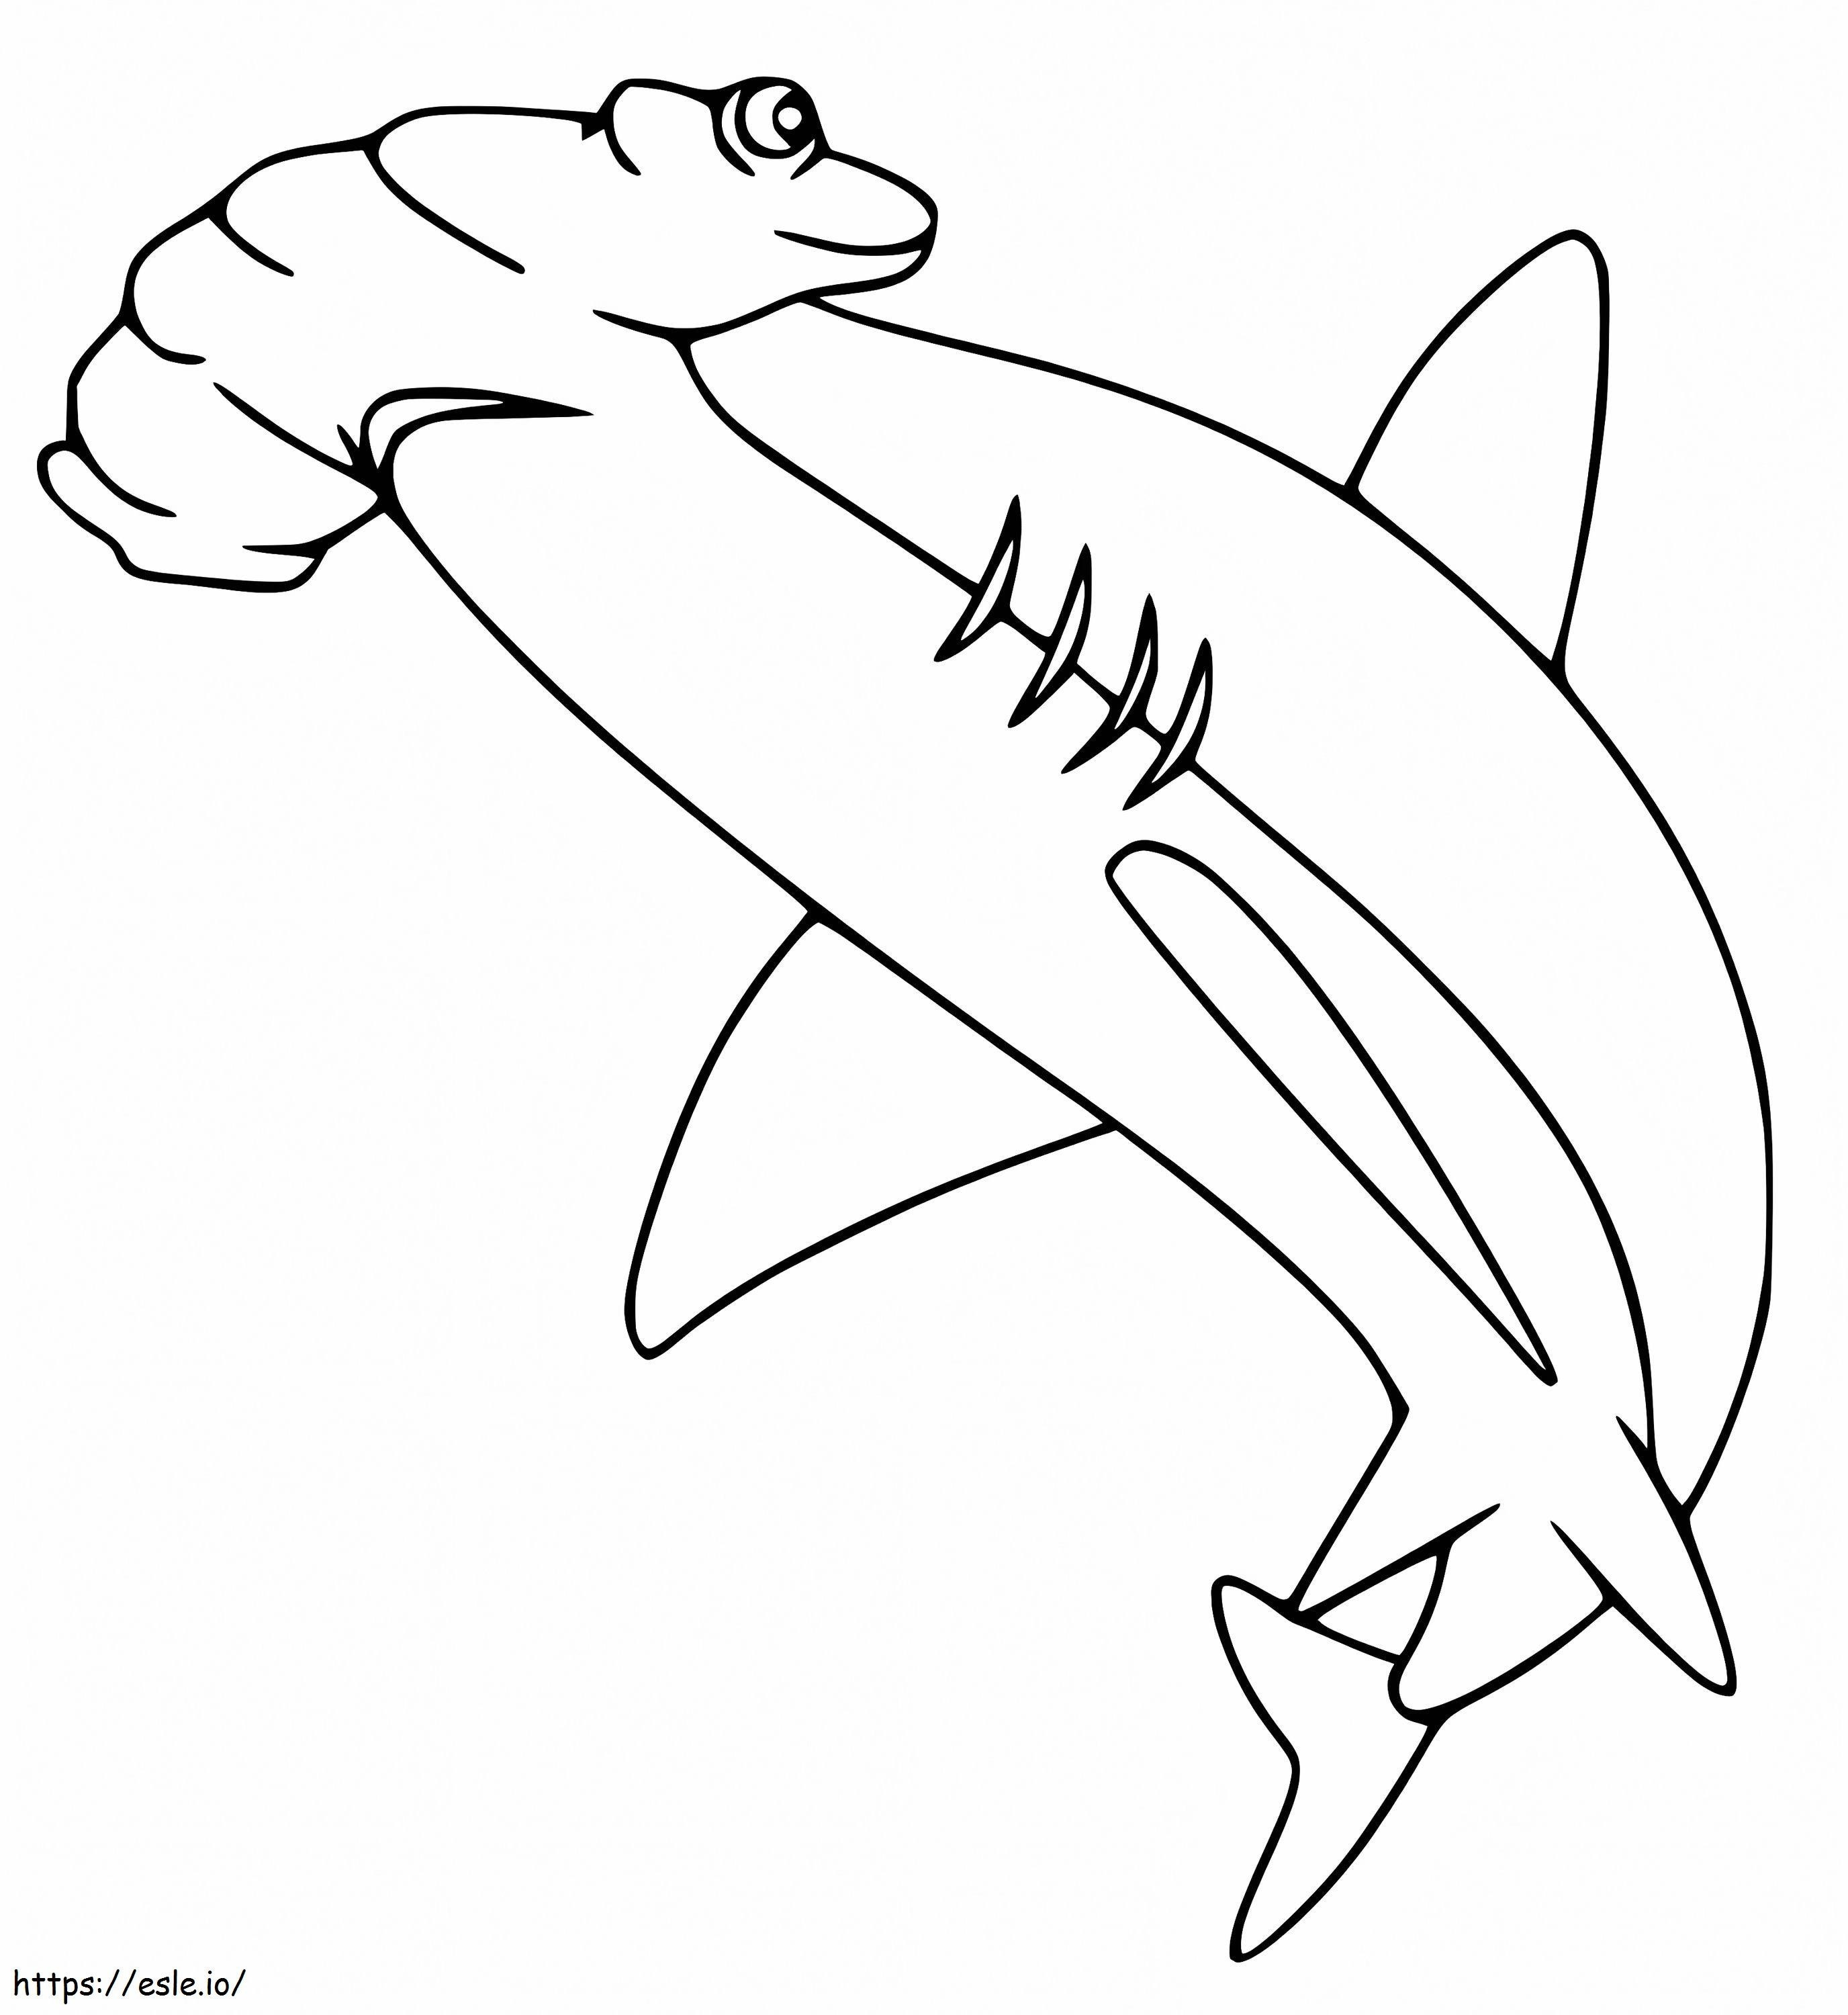 Hammerhai 5 ausmalbilder